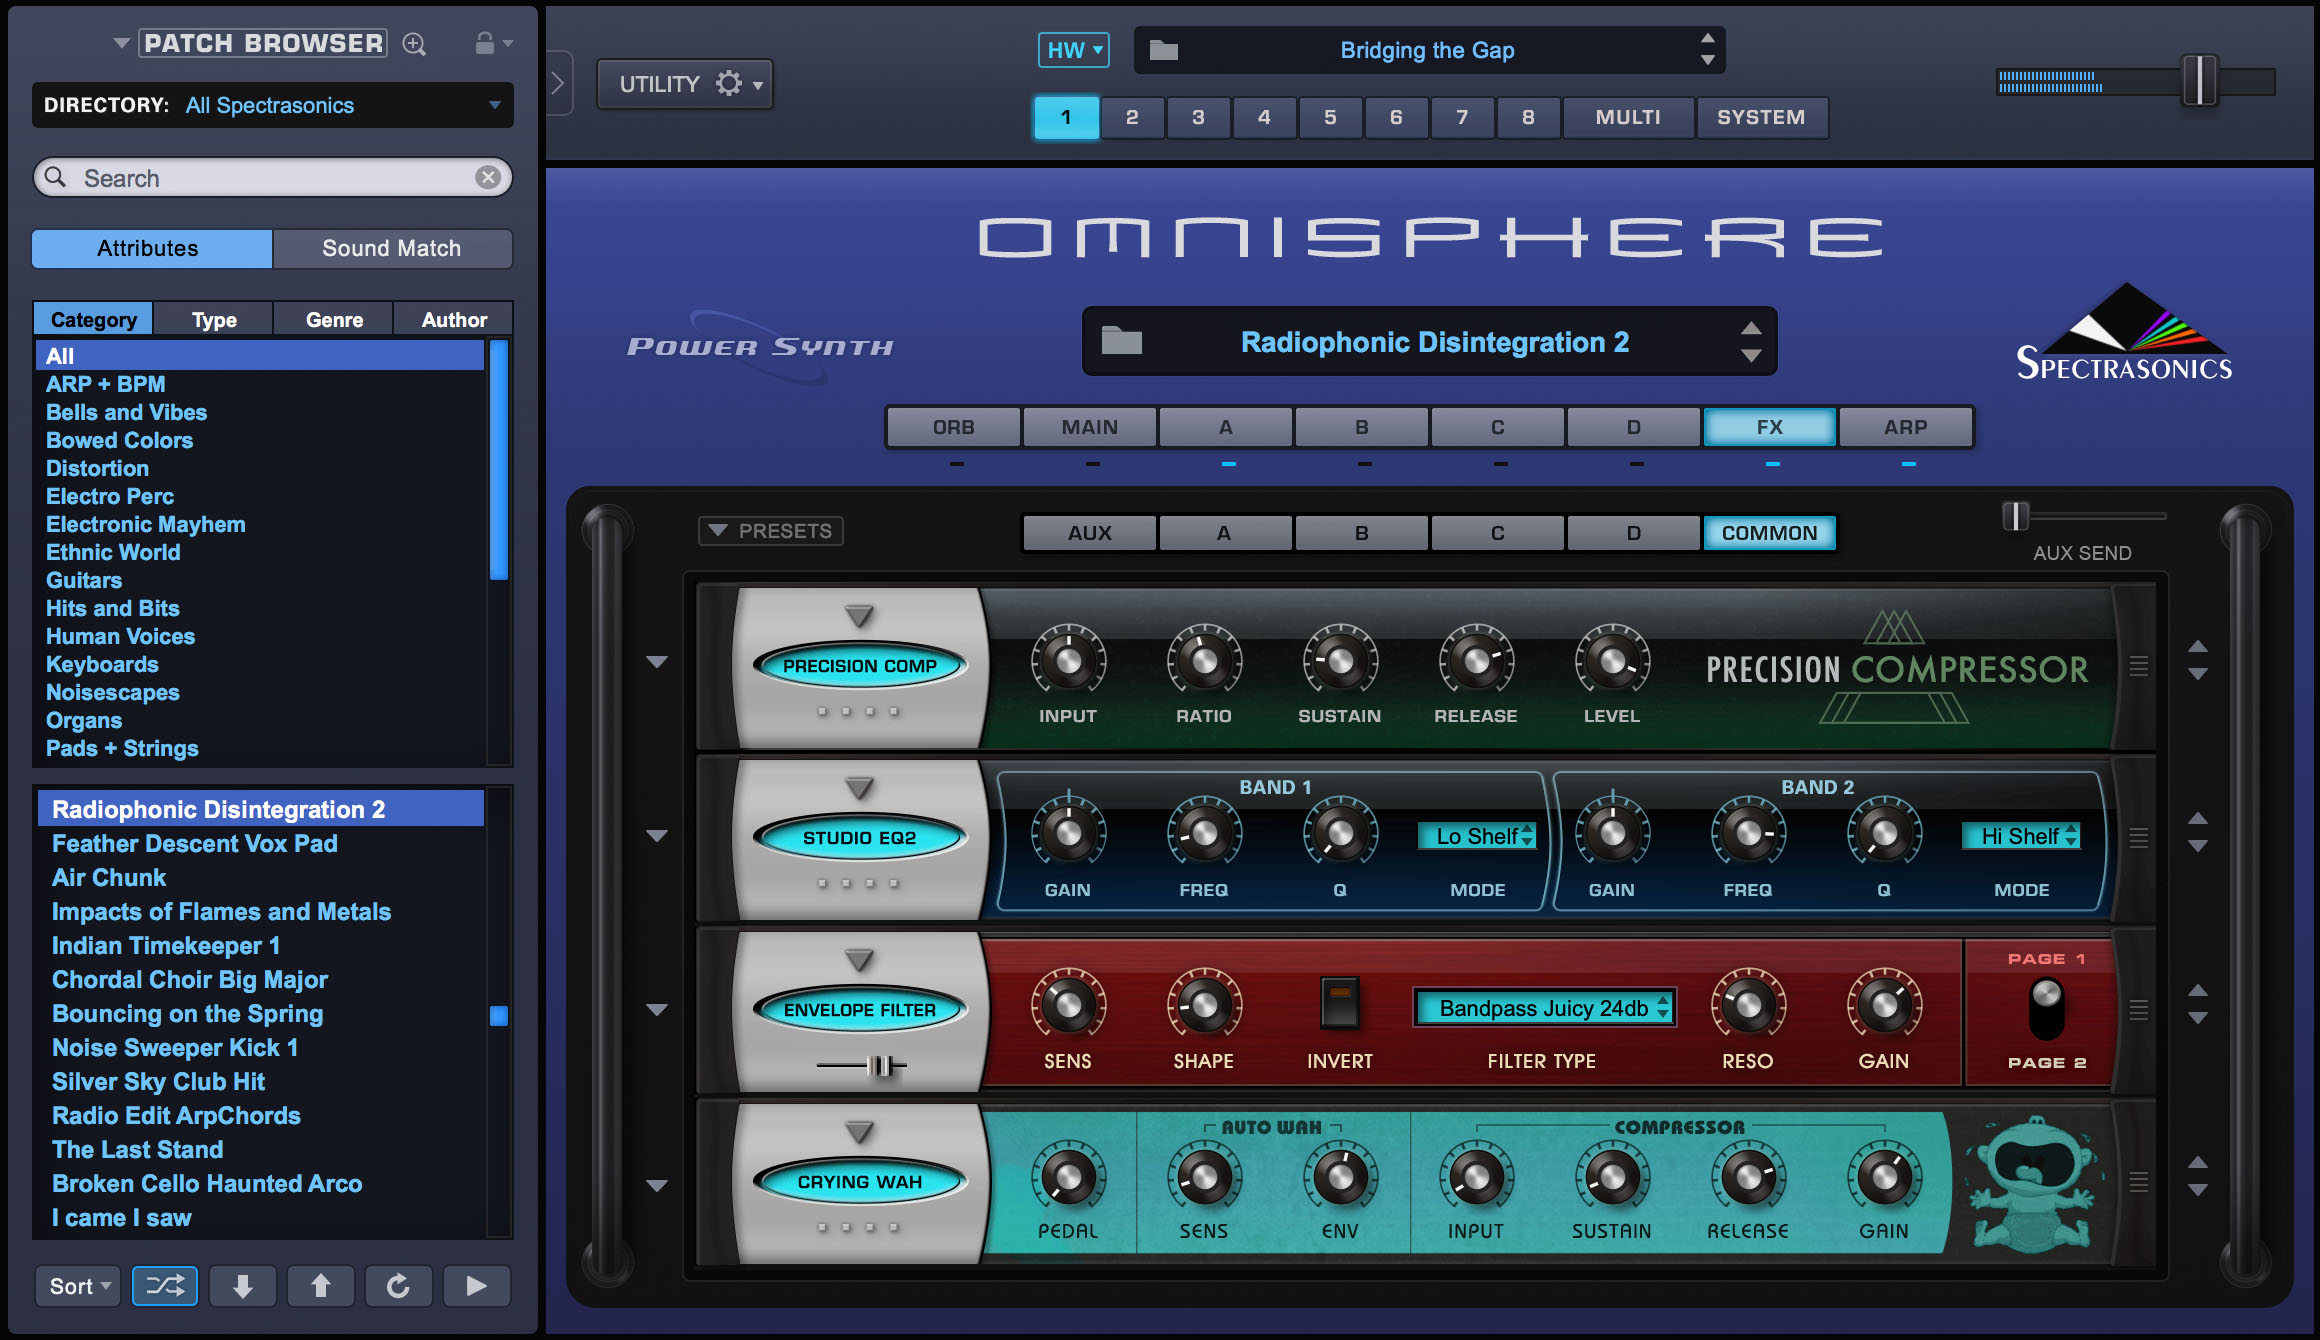 Omnisphere 2 pc